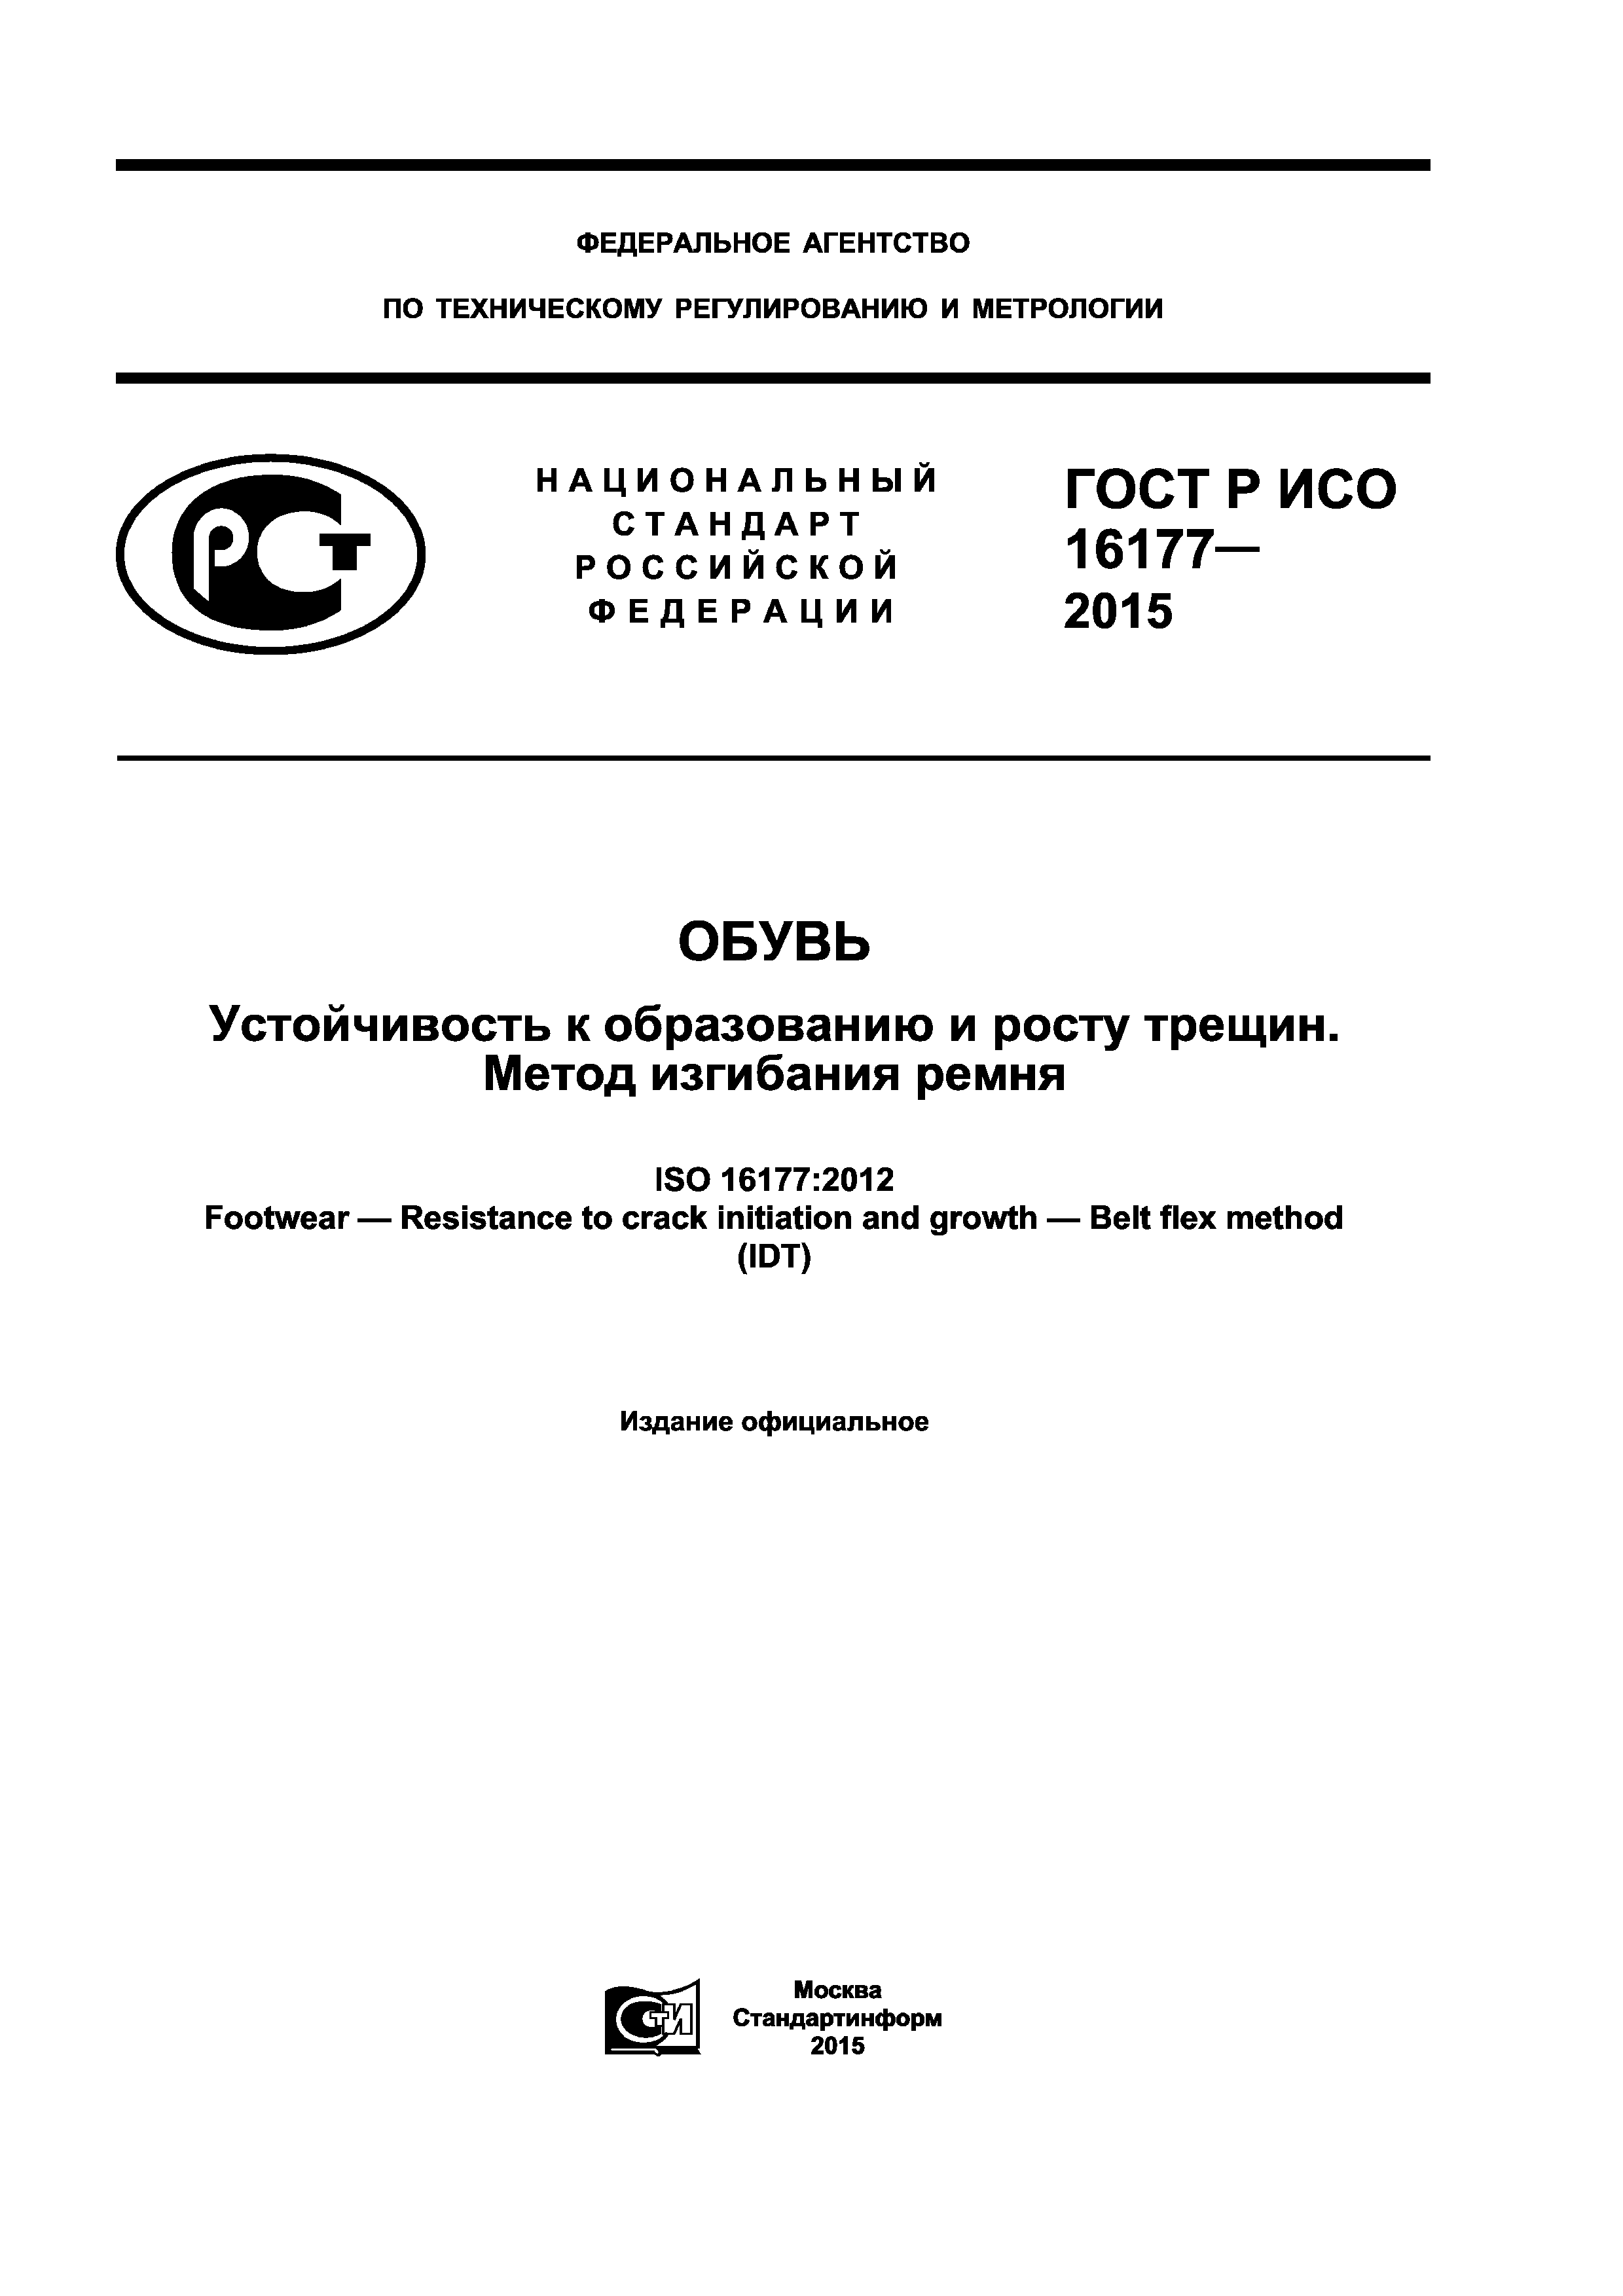 ГОСТ Р ИСО 16177-2015